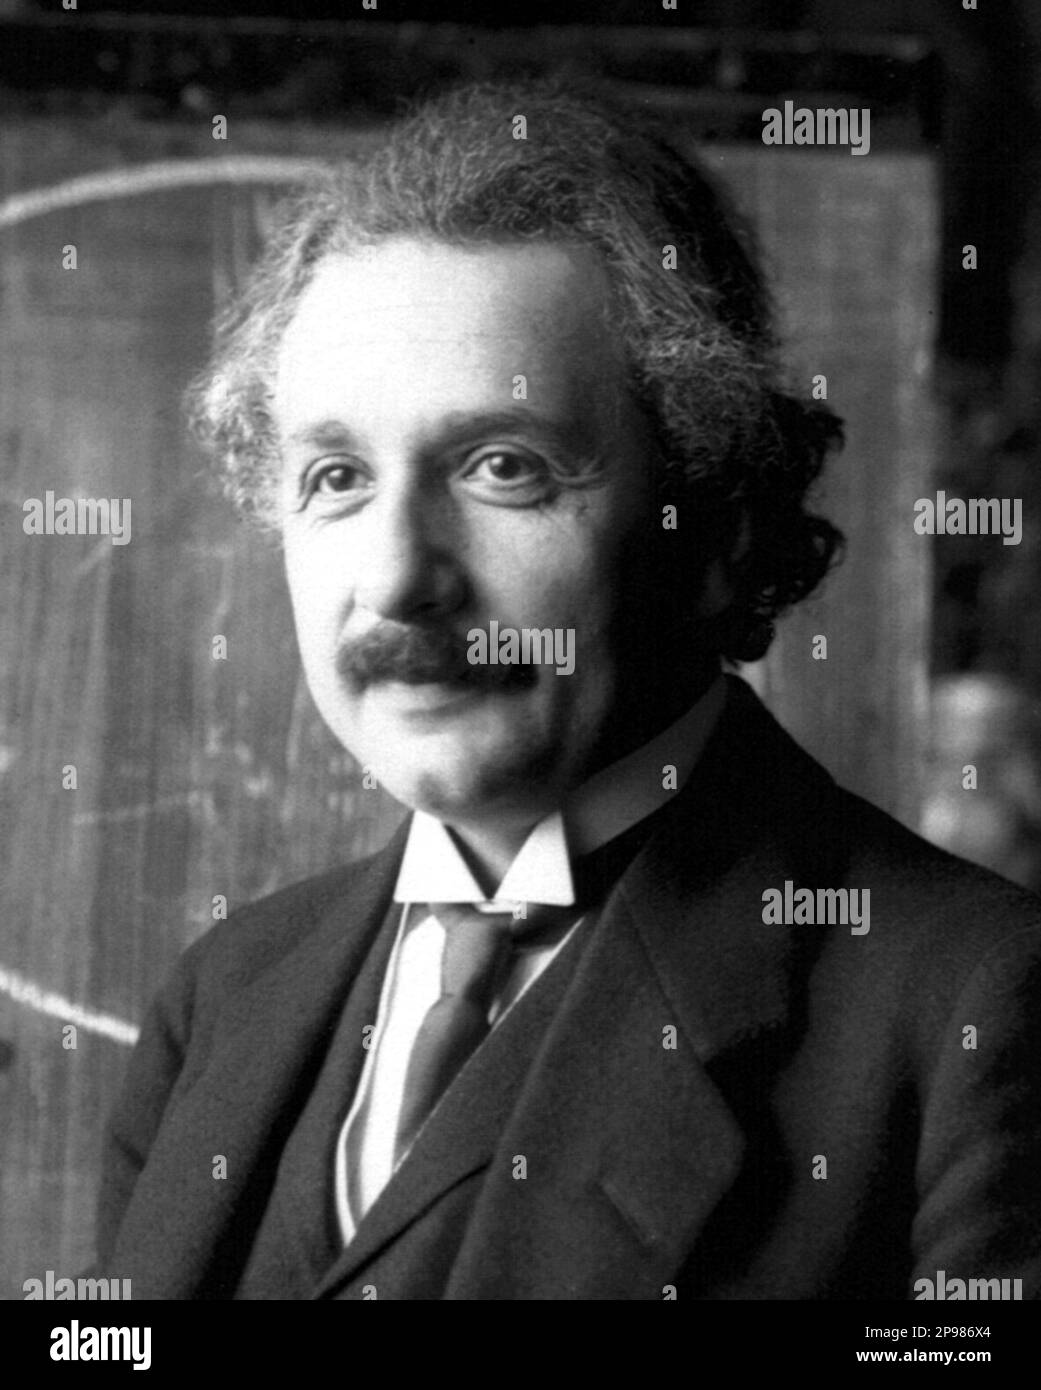 1921 : The german Physicist  ALBERT EINSTEIN ( 1879 - 1955 ) , 1921 Nobel Prize winner .  Photo by F. Schmutzer - foto storiche - foto storica  - scienziato - scientist  - portrait - ritratto  -  Physics - FISICA - FISICO - SCIENZA - SCIENCE  - baffi - moustache - PREMIO NOBEL PER LA FISICA - Atomica - Atomo  - scienziato - genius - genio  - tie - cravatta - collar - colletto ----   Archivio GBB      Argenzia Stock Photo